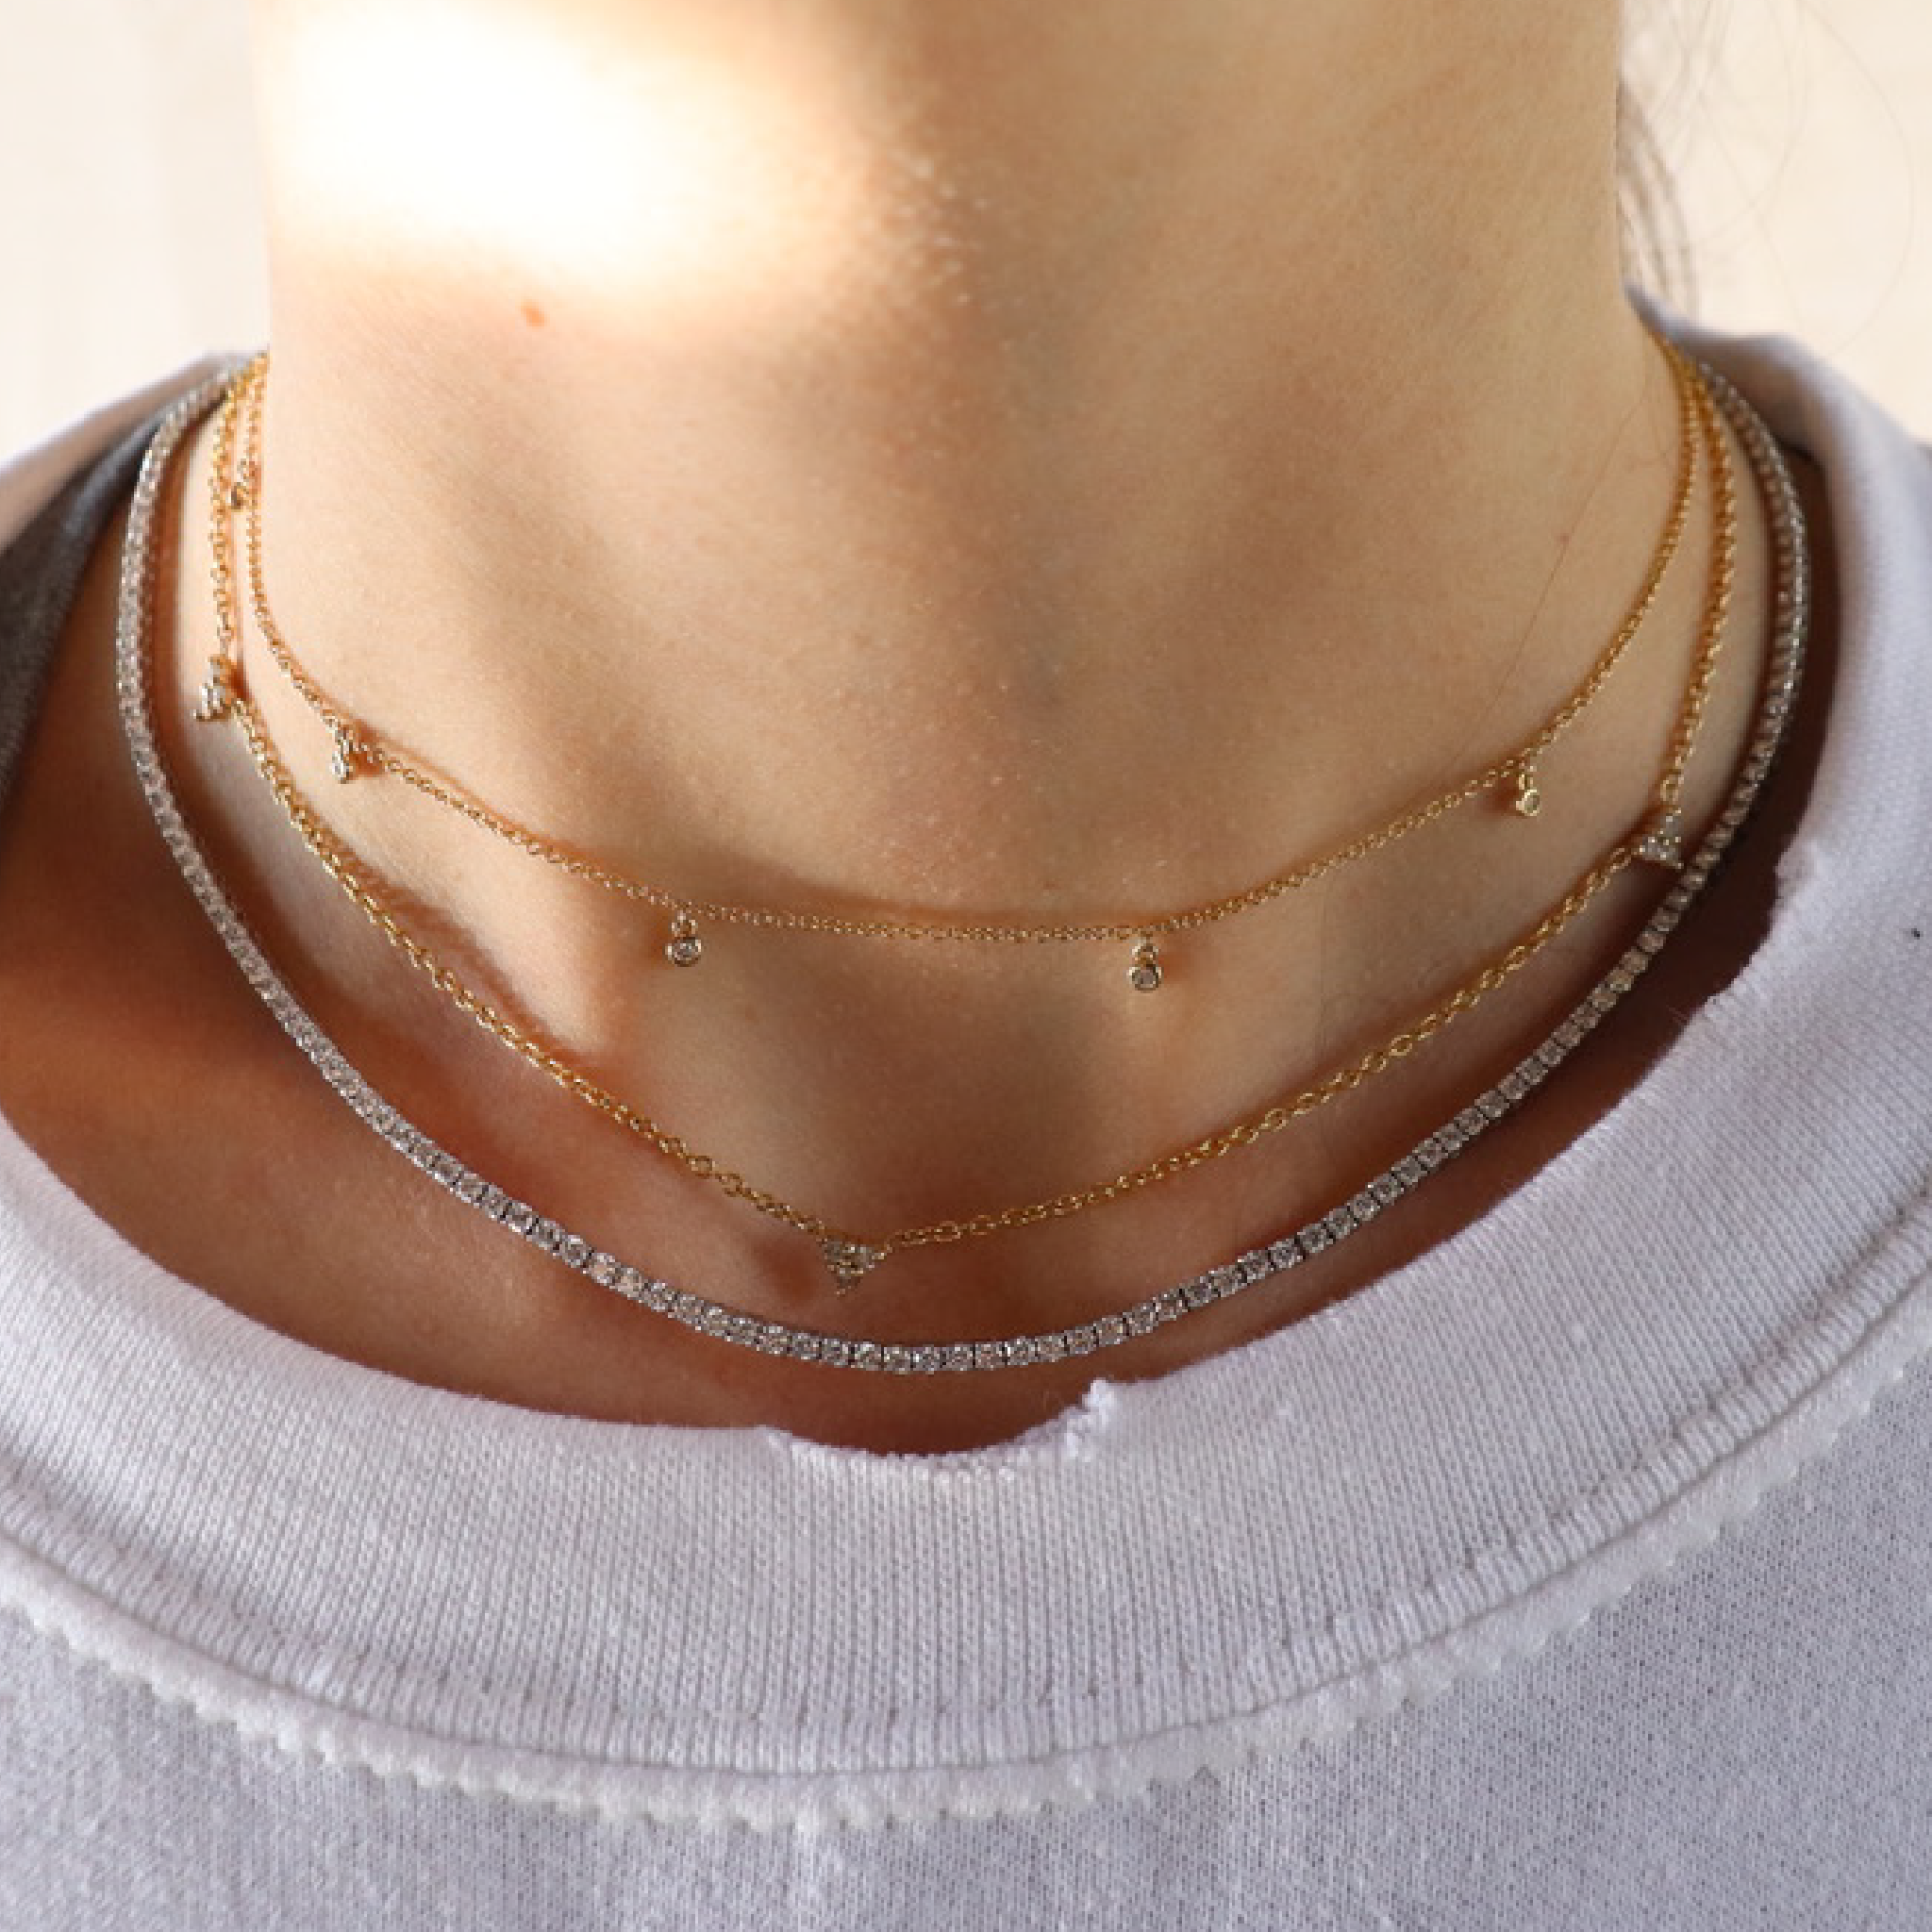 Diamond Drop Bezel Necklace